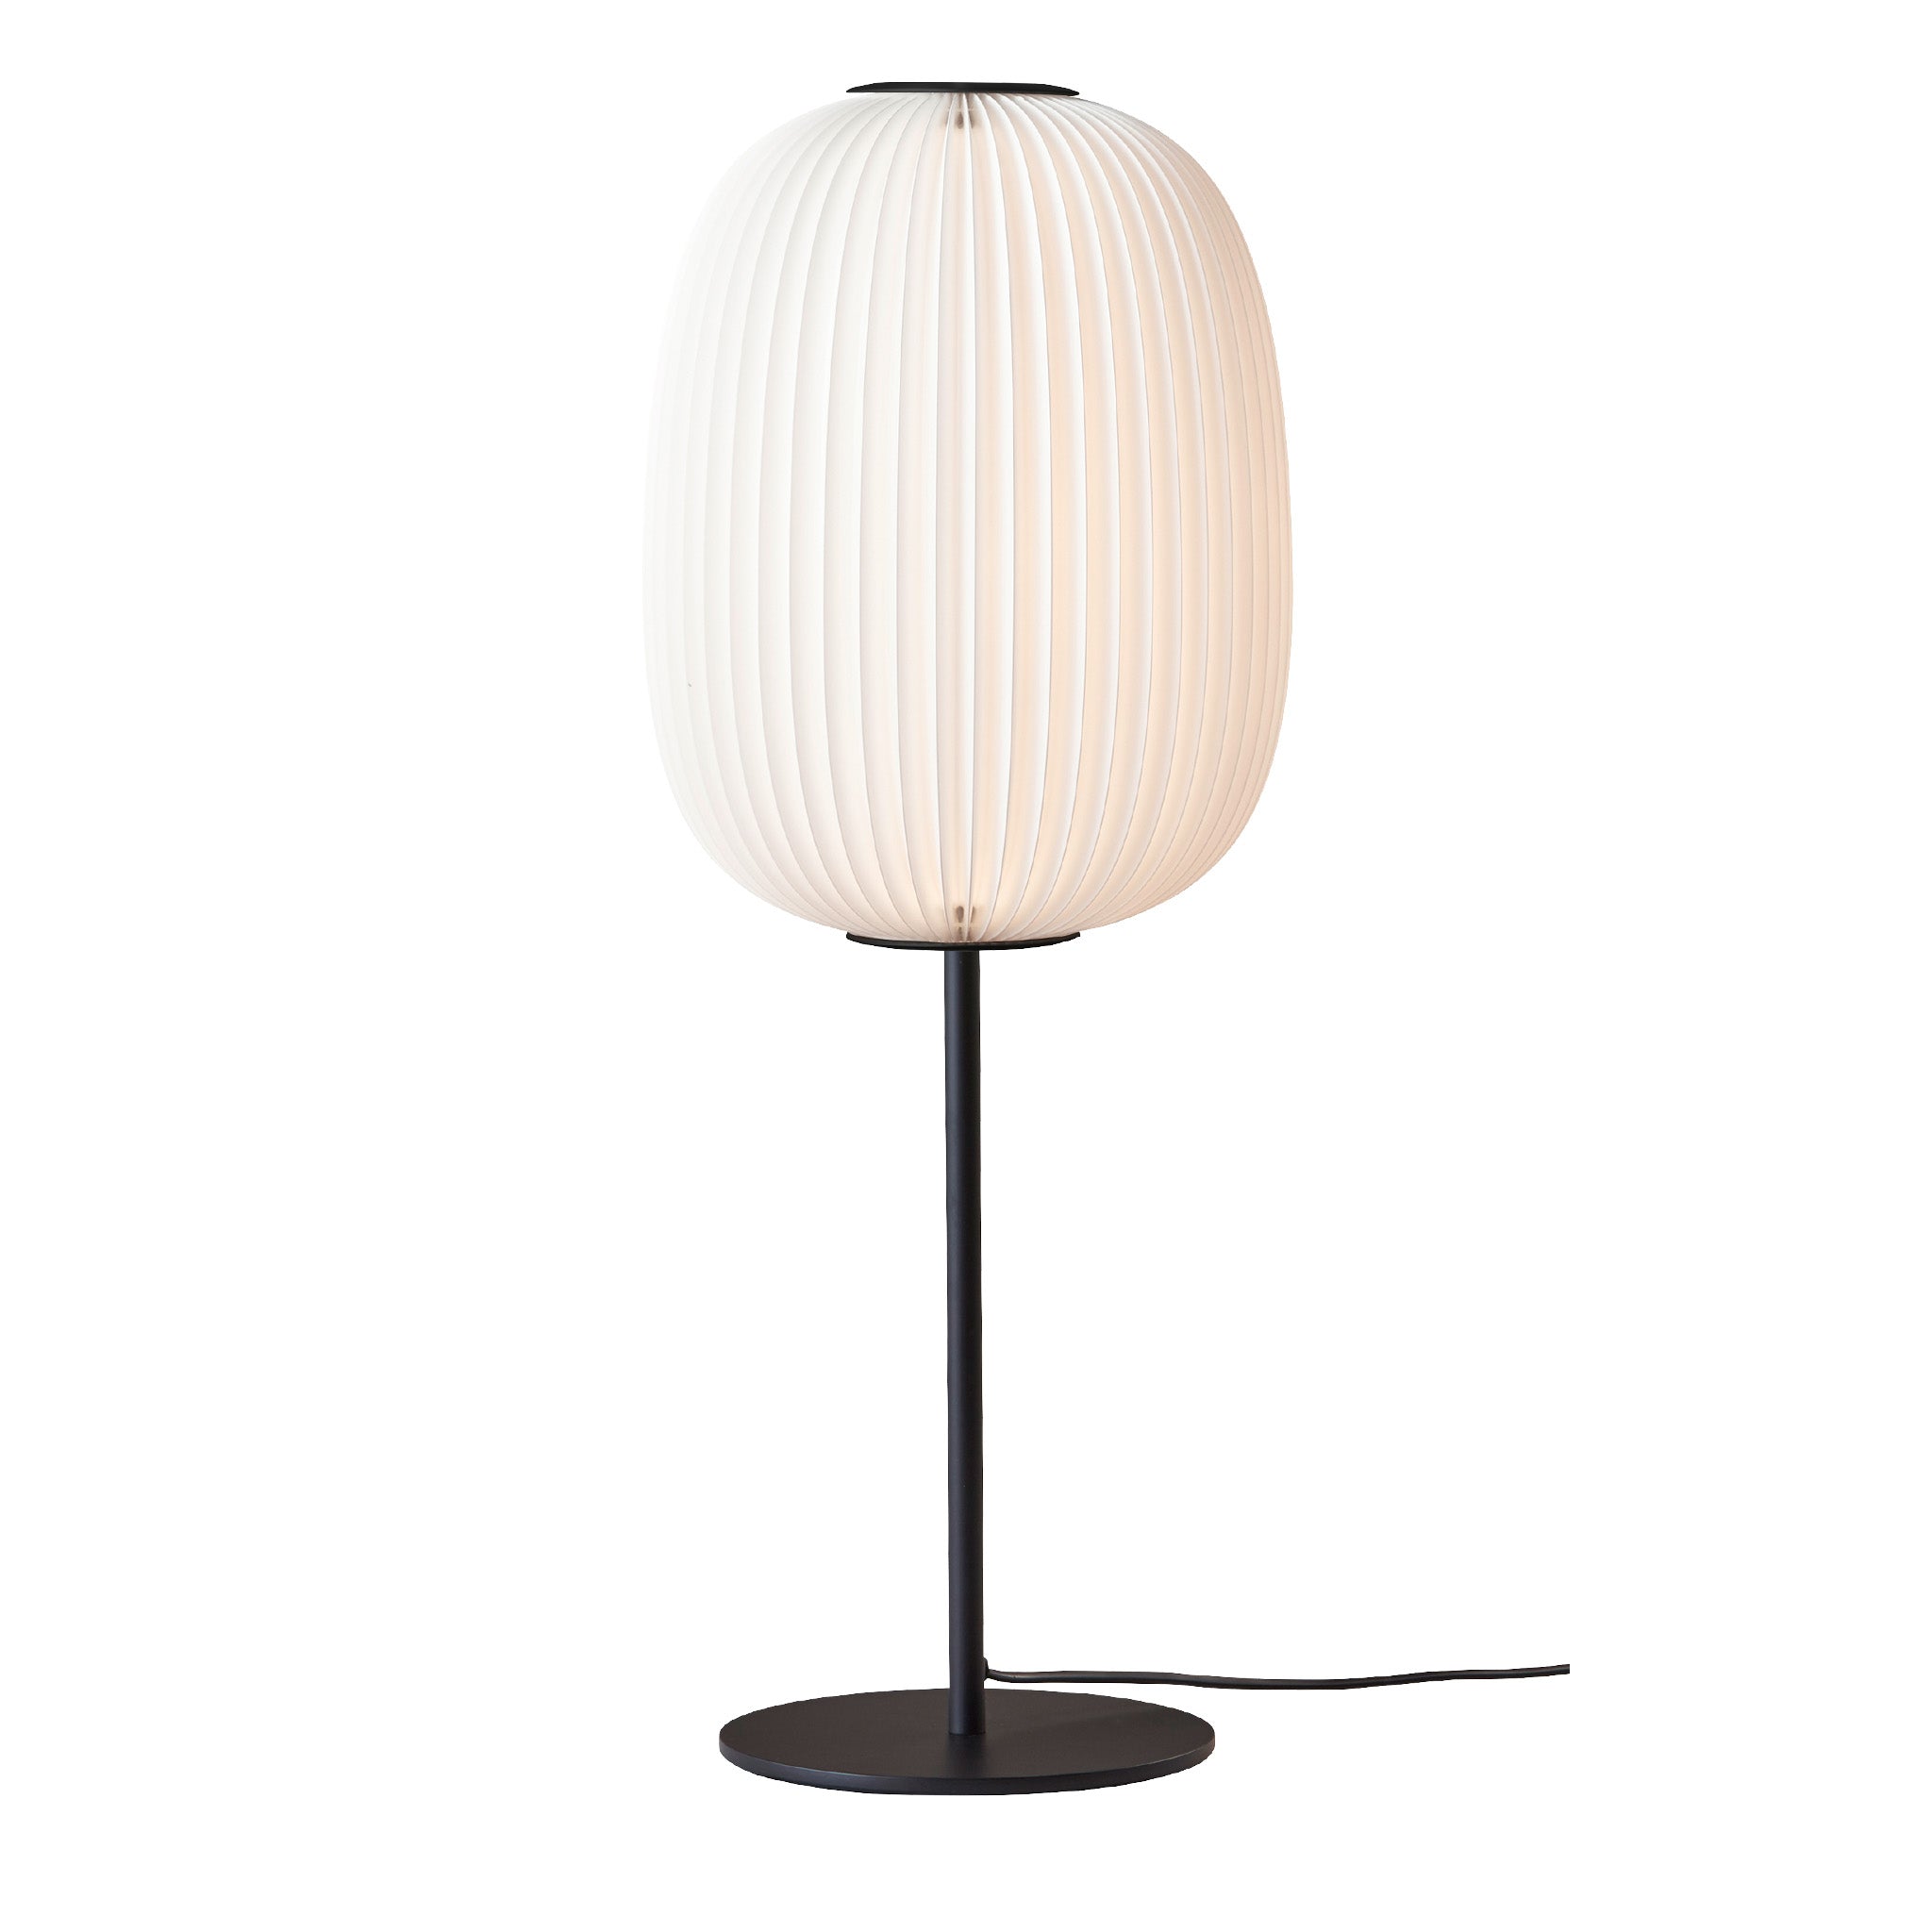 Lamella 335 Table Lamp By Takagi & Homstvedt